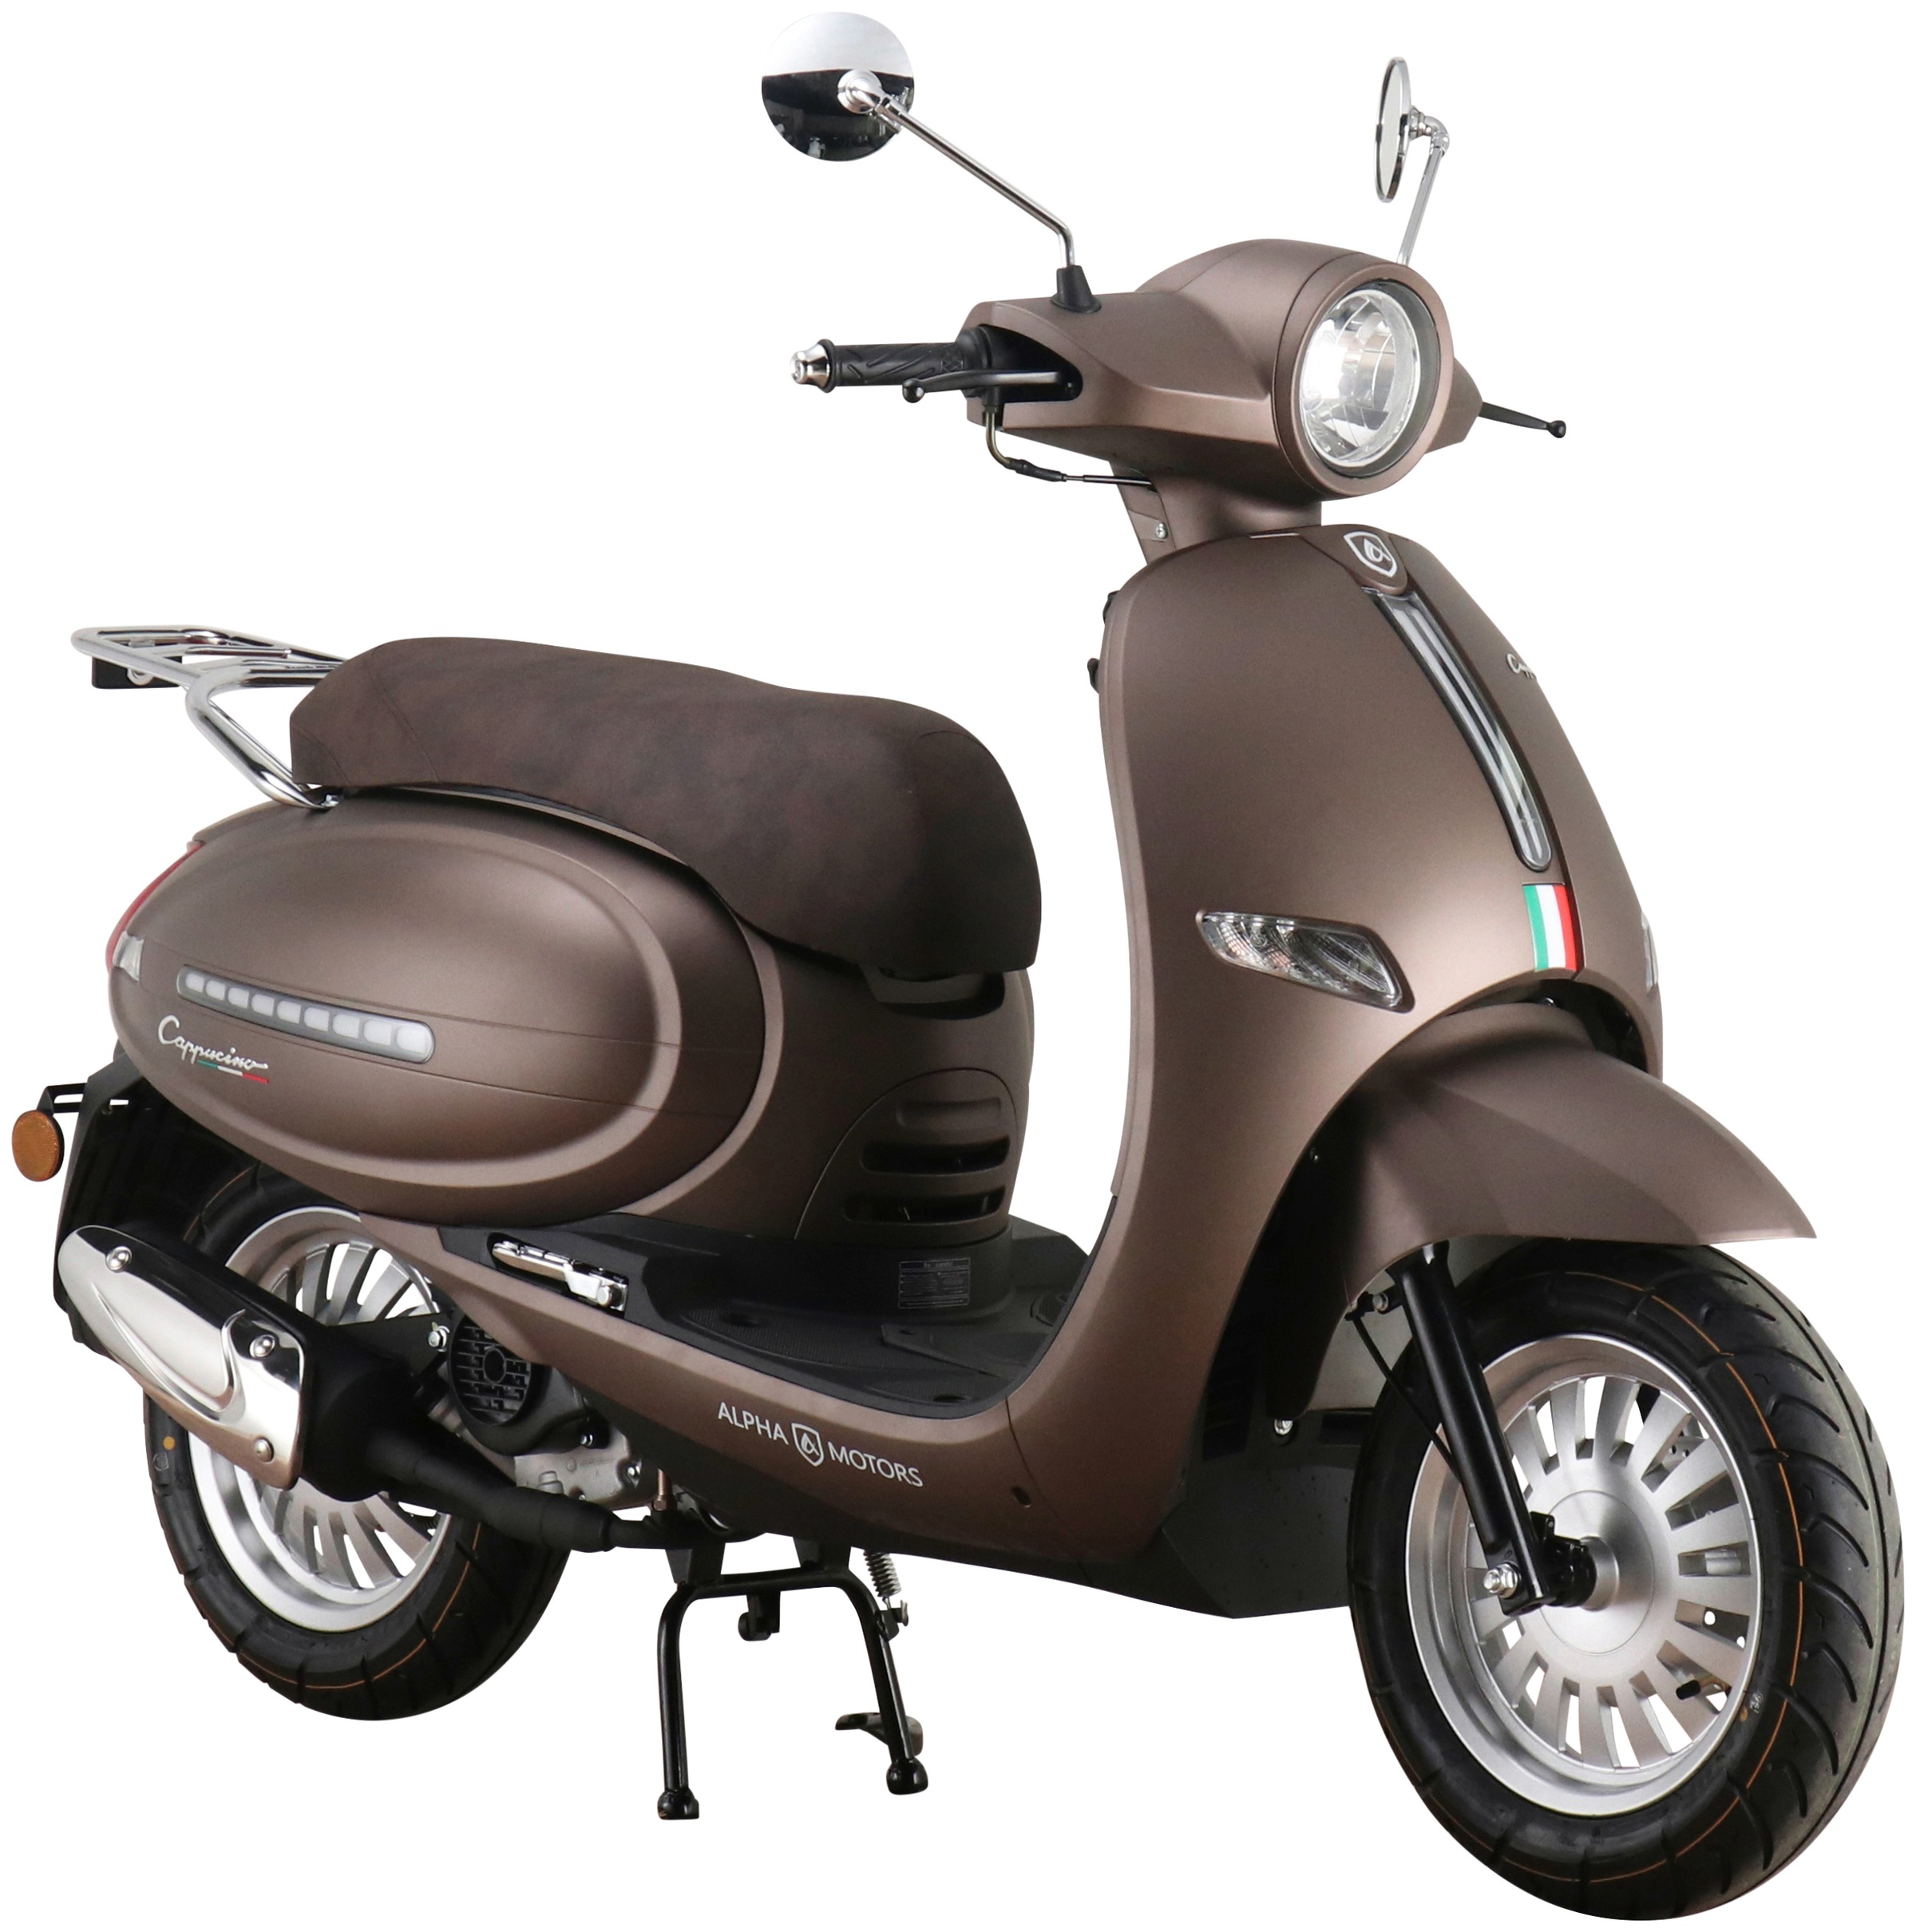 Alpha Motors Motorroller »Cappucino«, 50 cm³, 45 km/h, Euro 5, 2,99 PS  jetzt im %Sale